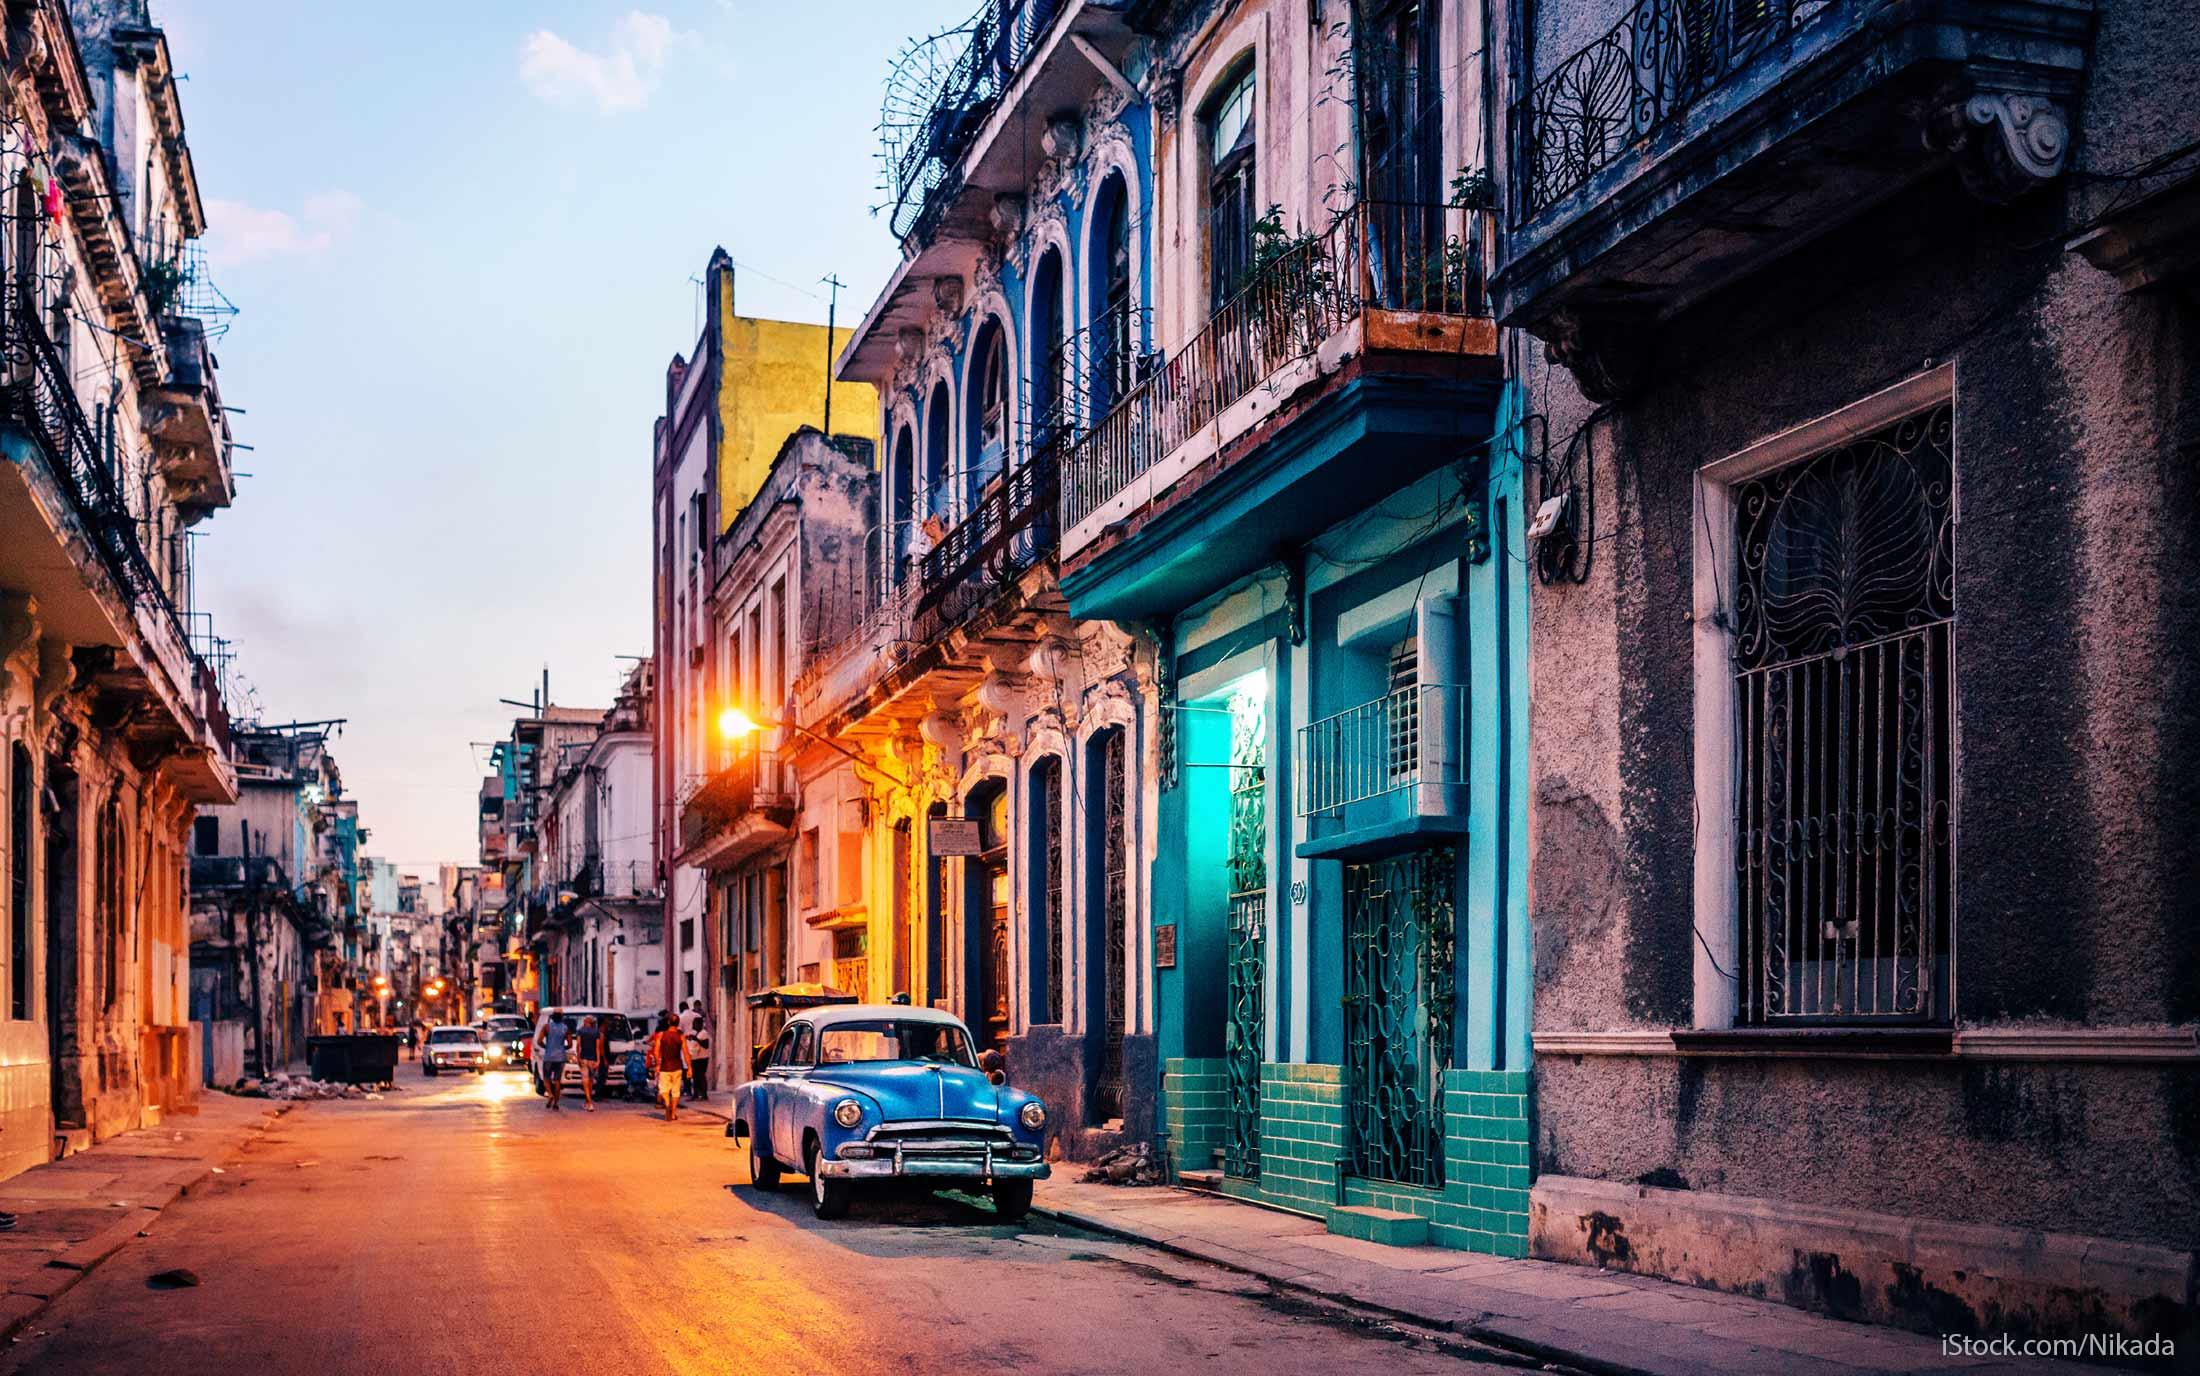 Endividamento externo cubano: o caminho rumo à normalização